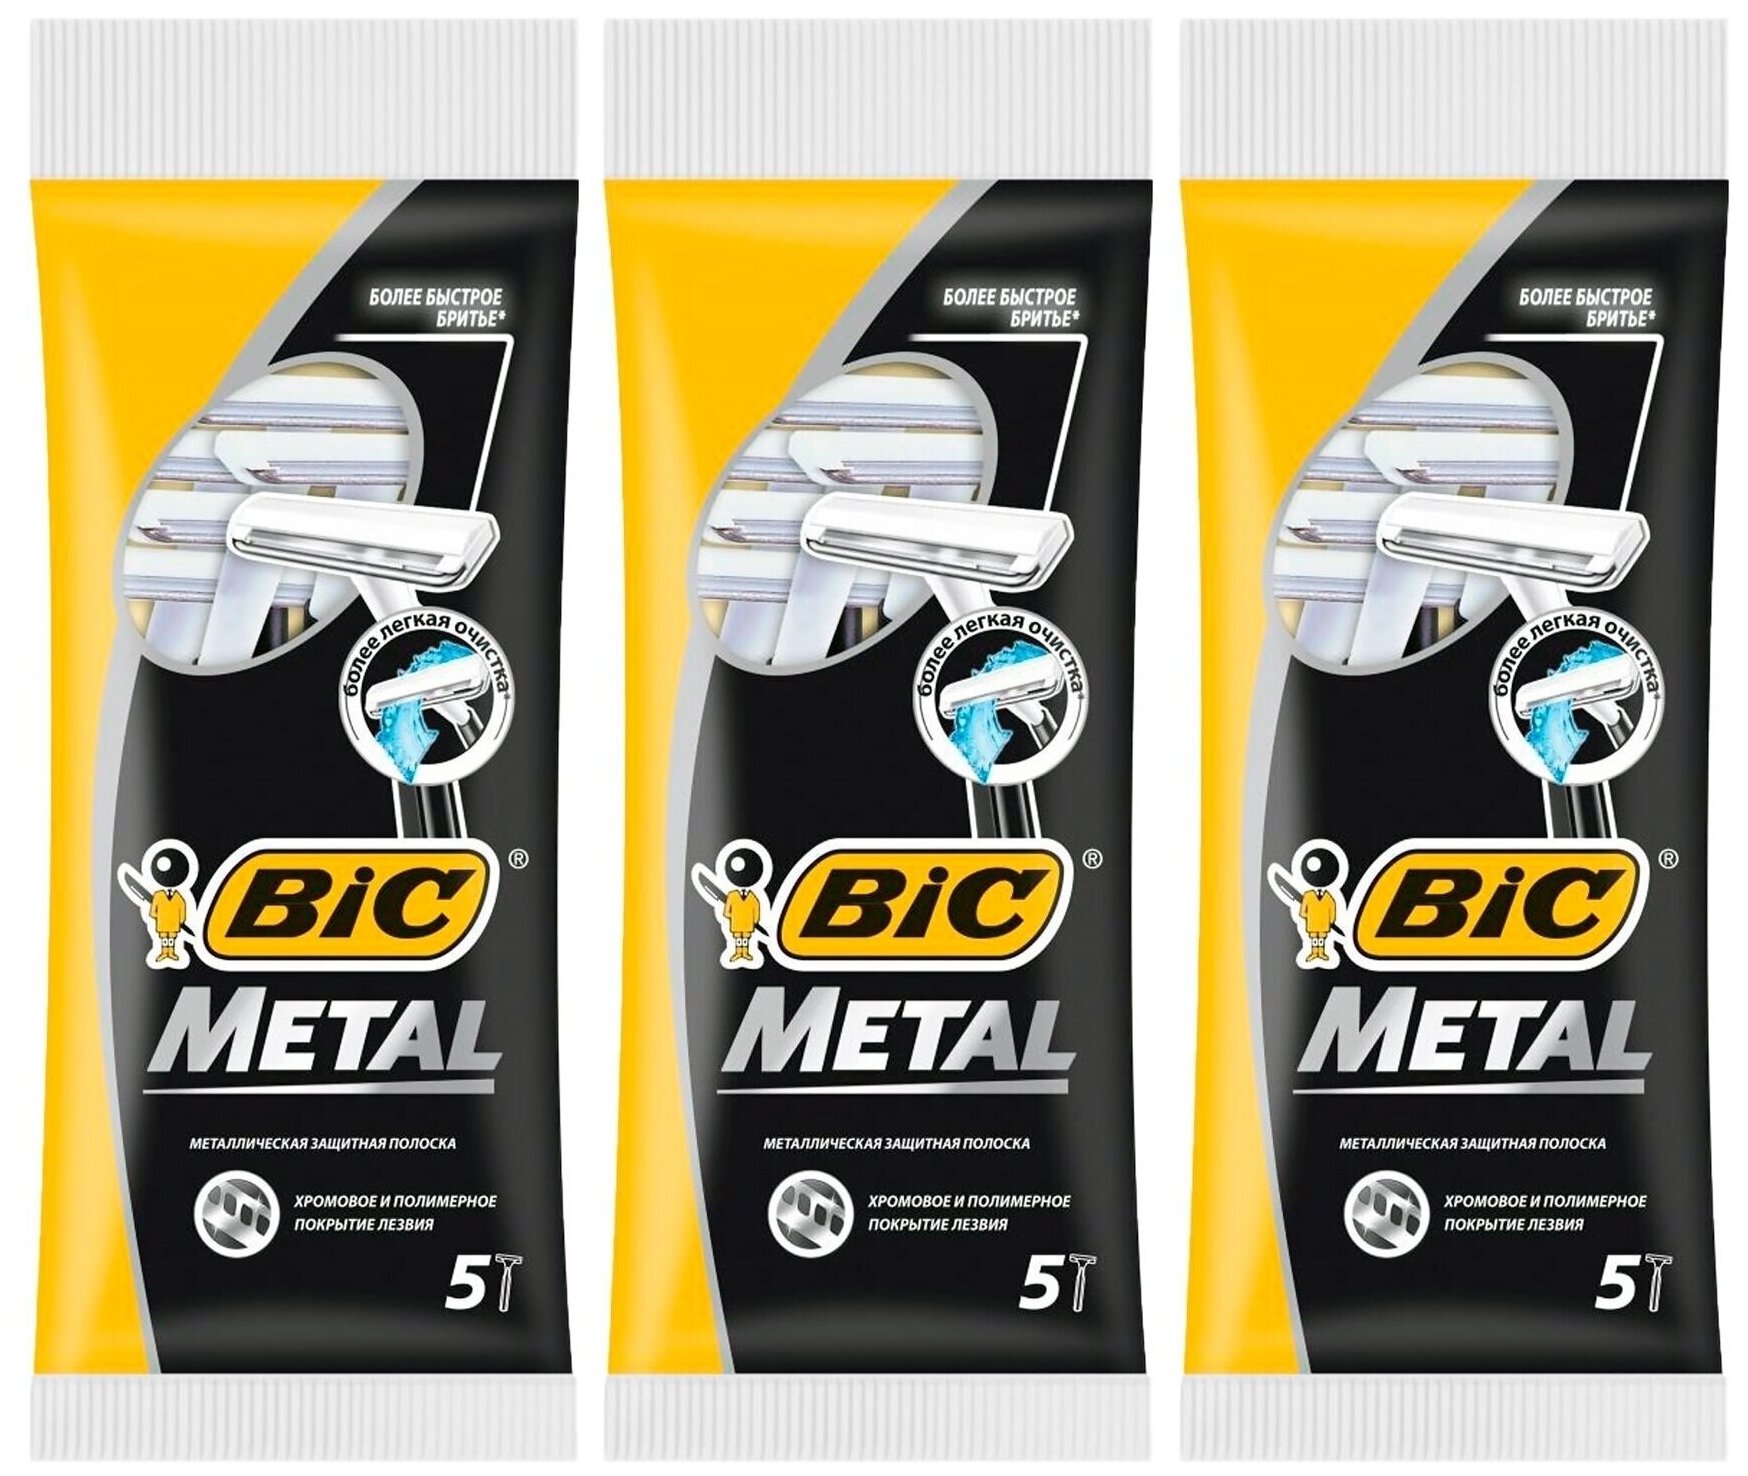 Бритвенный станок Bic Metal 5 шт х 3 упаковки